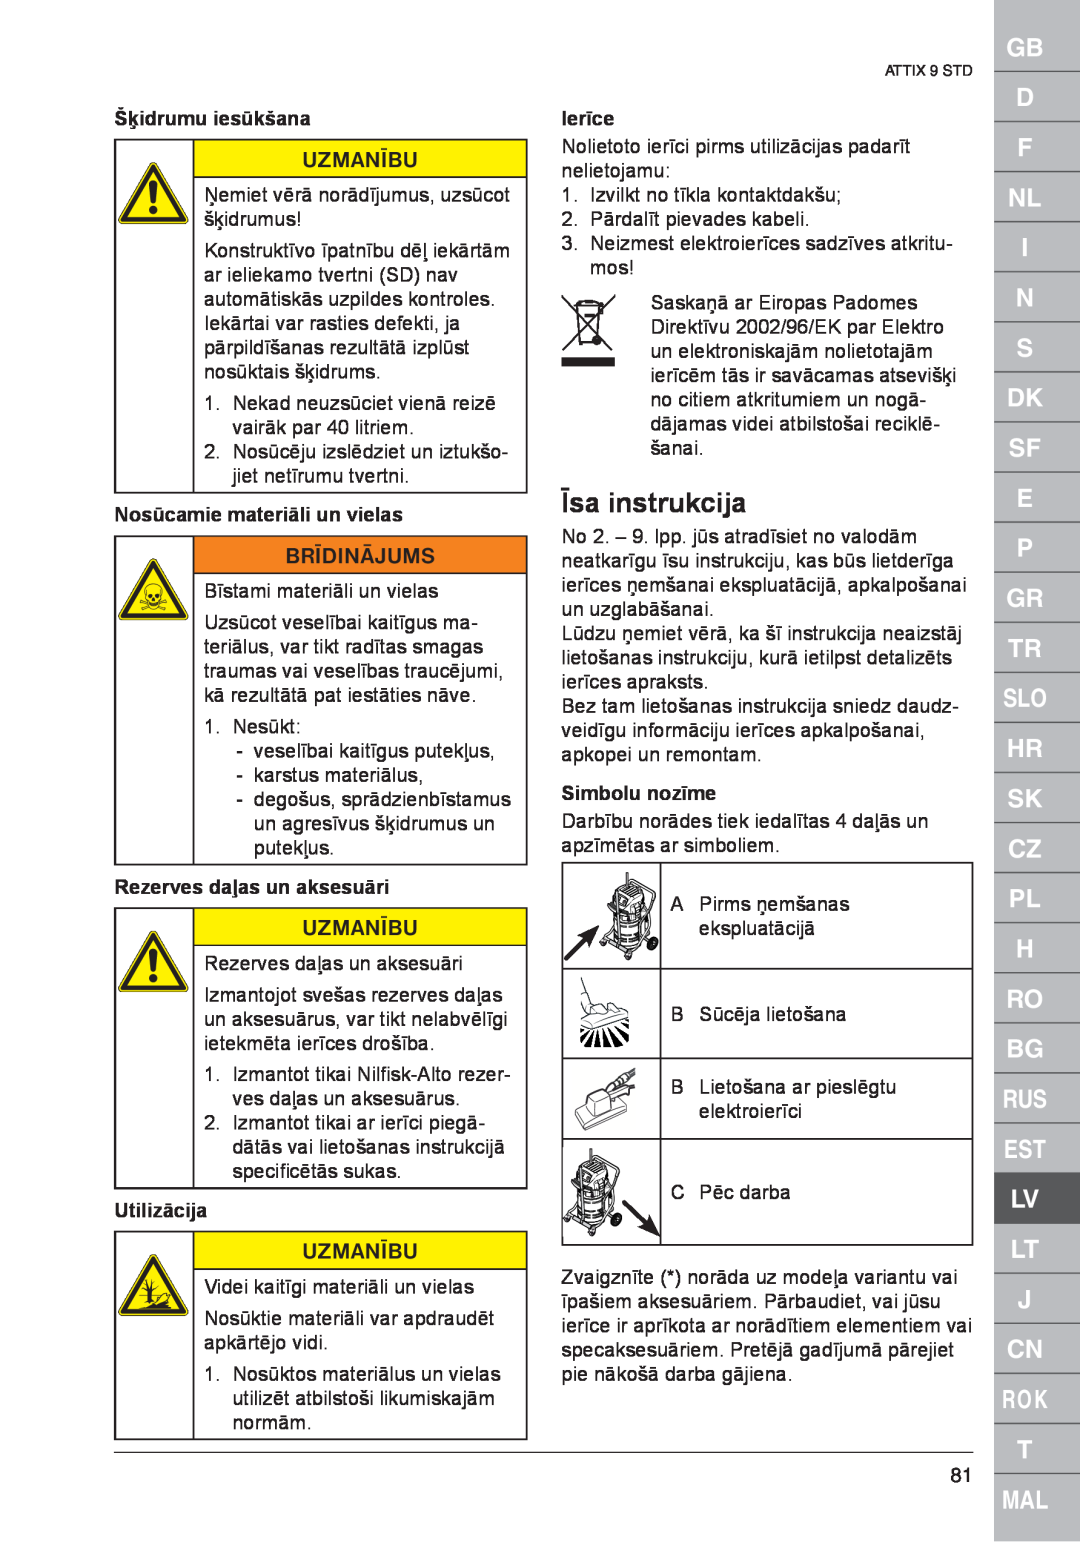 Nilfisk-ALTO ATTIX 961-01 Īsa instrukcija, Šķidrumu iesūkšana, Nosūcamie materiāli un vielas, Rezerves daļas un aksesuāri 